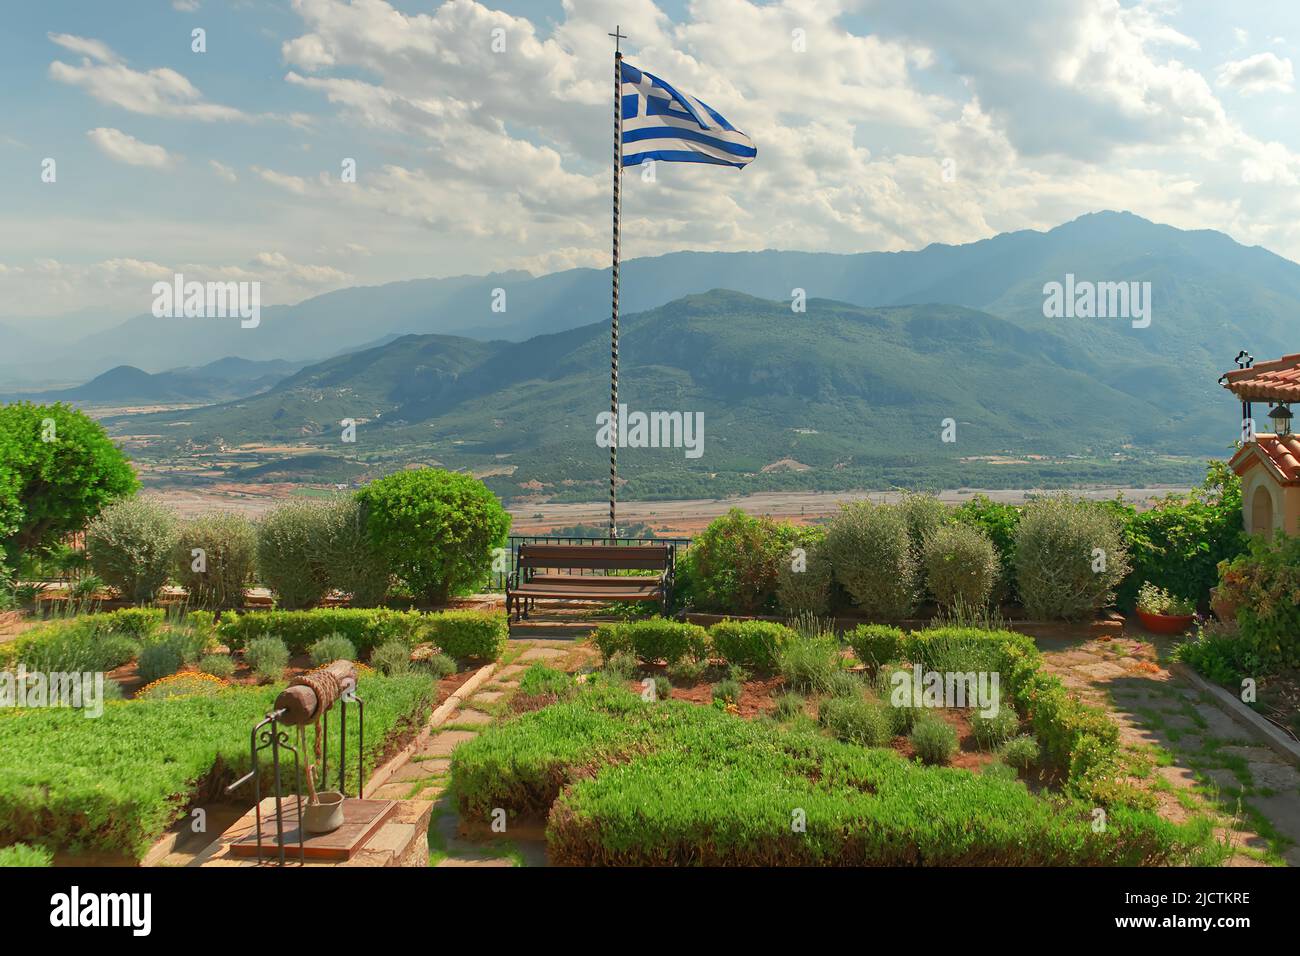 La Grecia batte la bandiera greca che sventola sul ponte di osservazione . Kalabaka, Grecia. Foto Stock